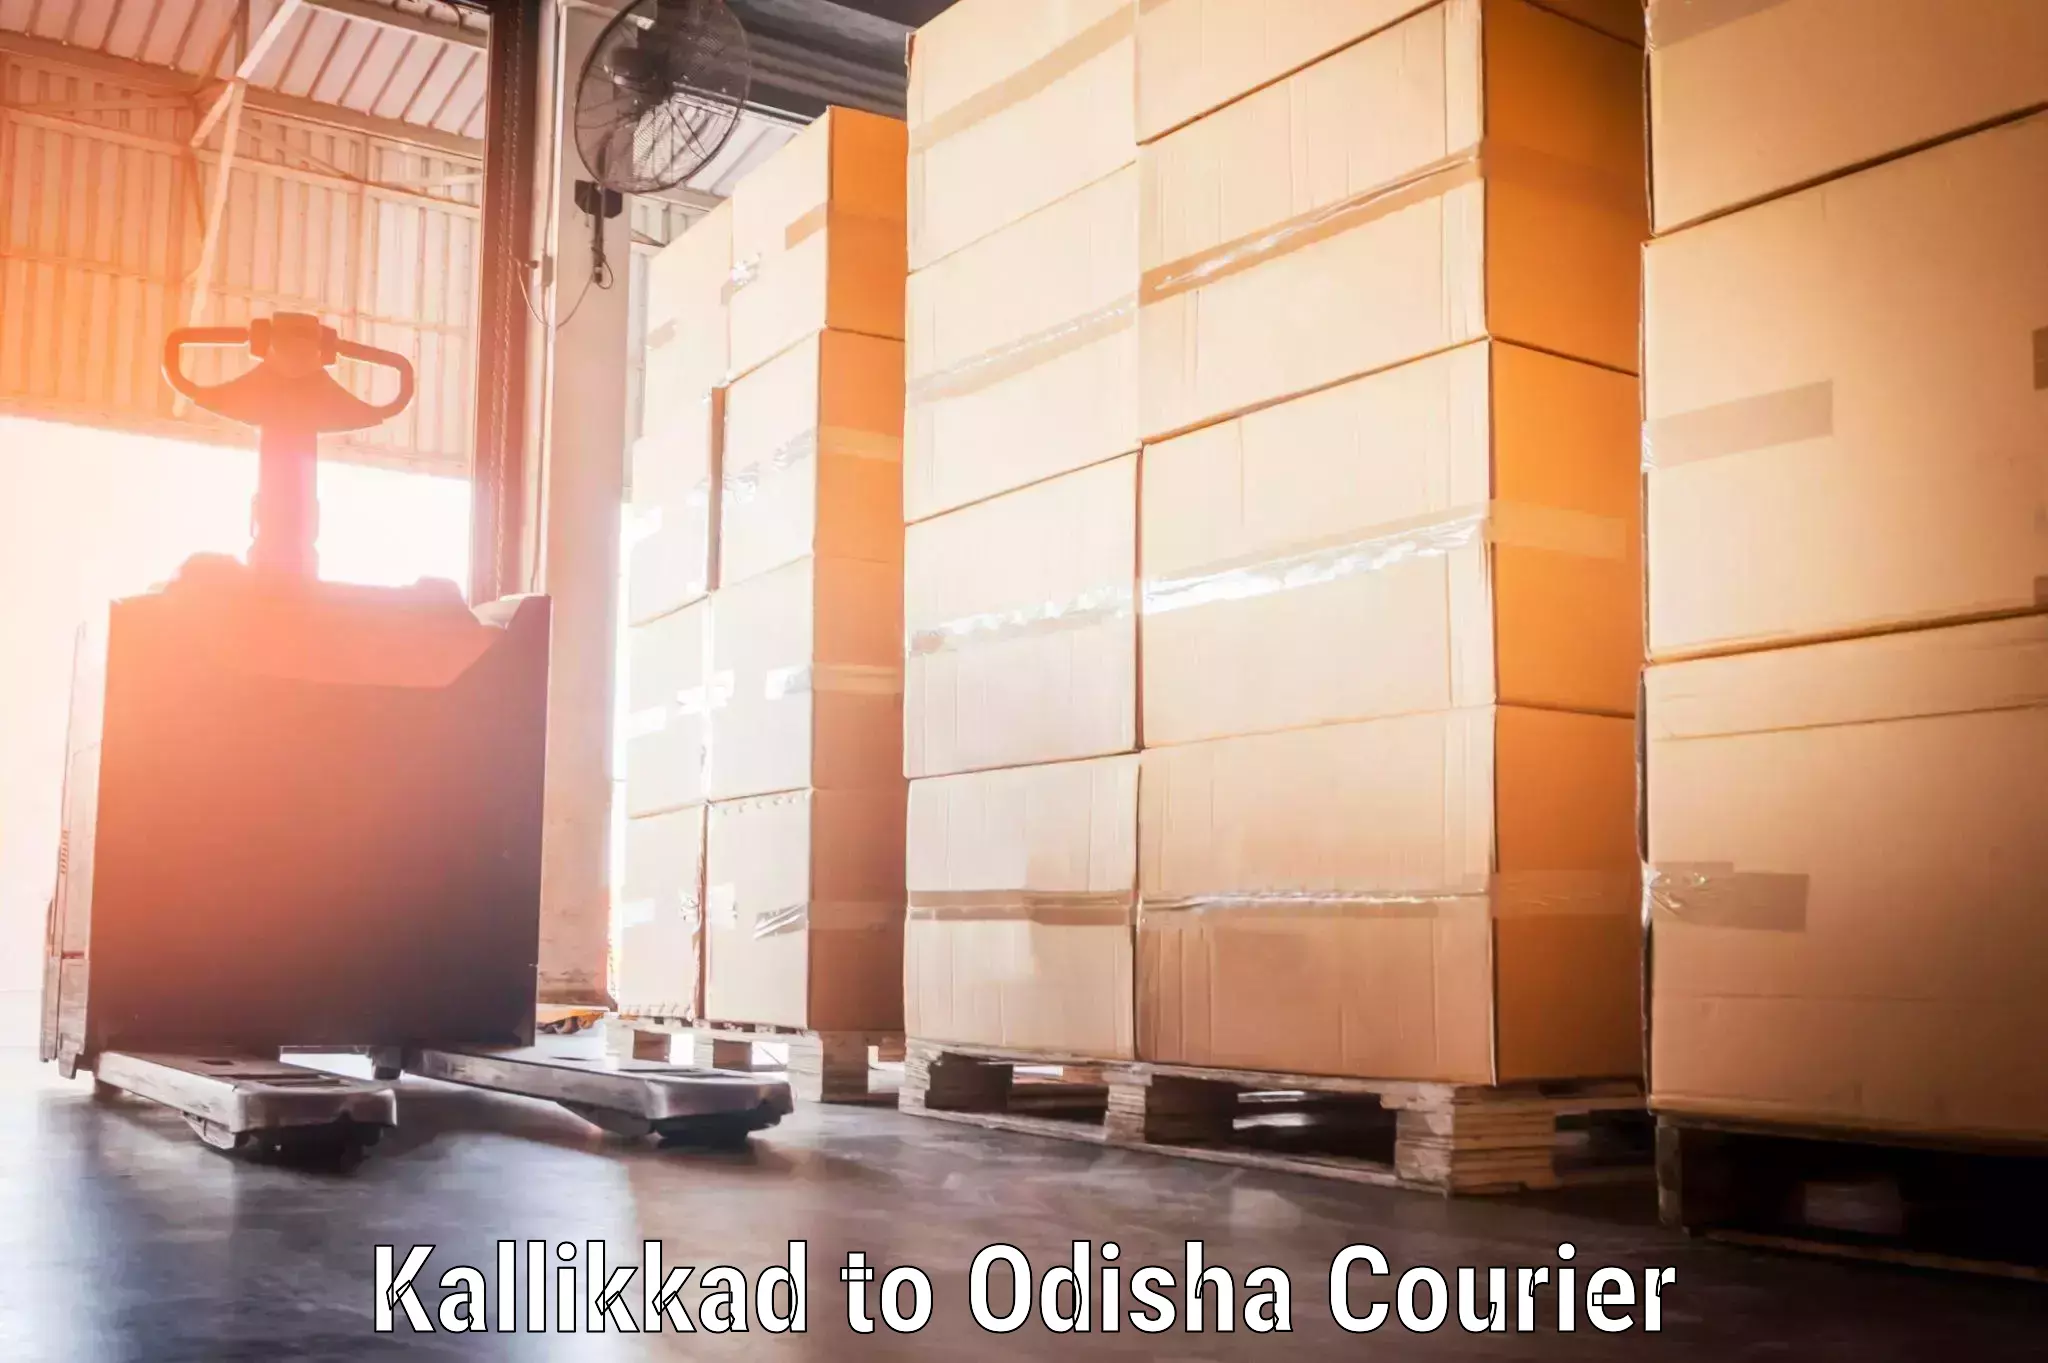 Luggage delivery network Kallikkad to Mathili